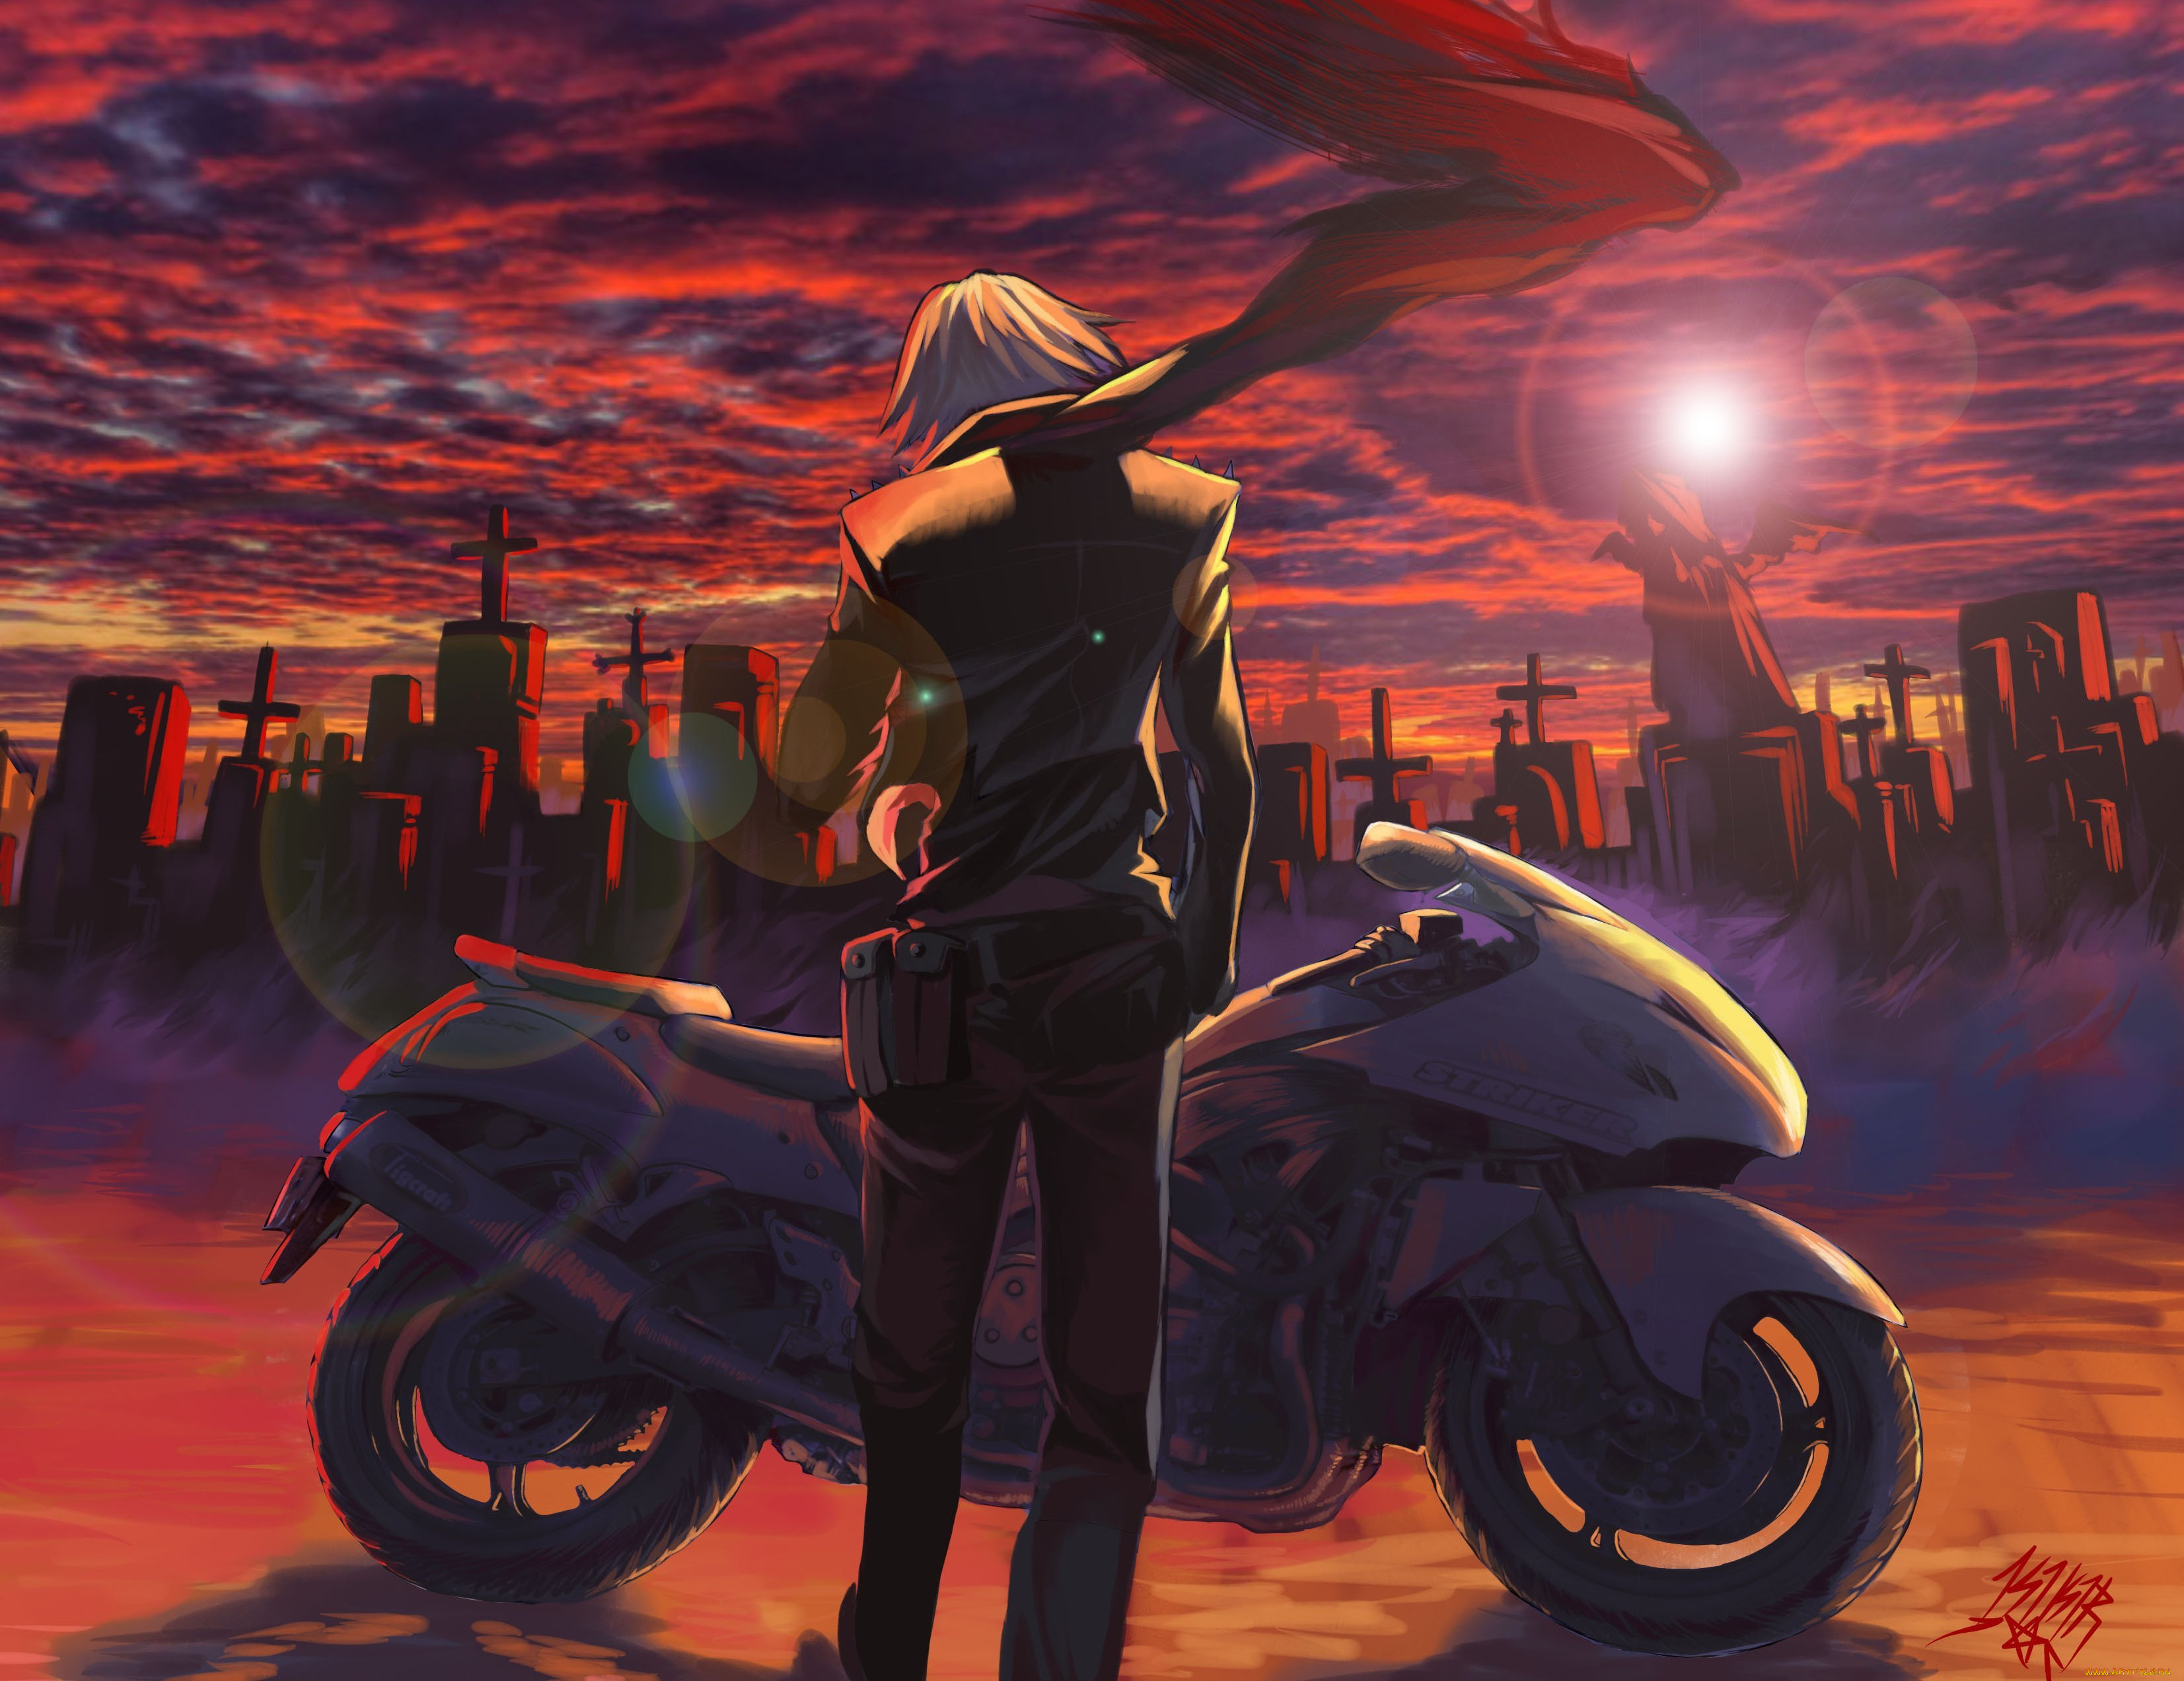 аниме, -weapon, , blood, &, technology, мотоцикл, парень, kikira, арт, кладбище, облака, небо, шарф, закат, солнце, кресты